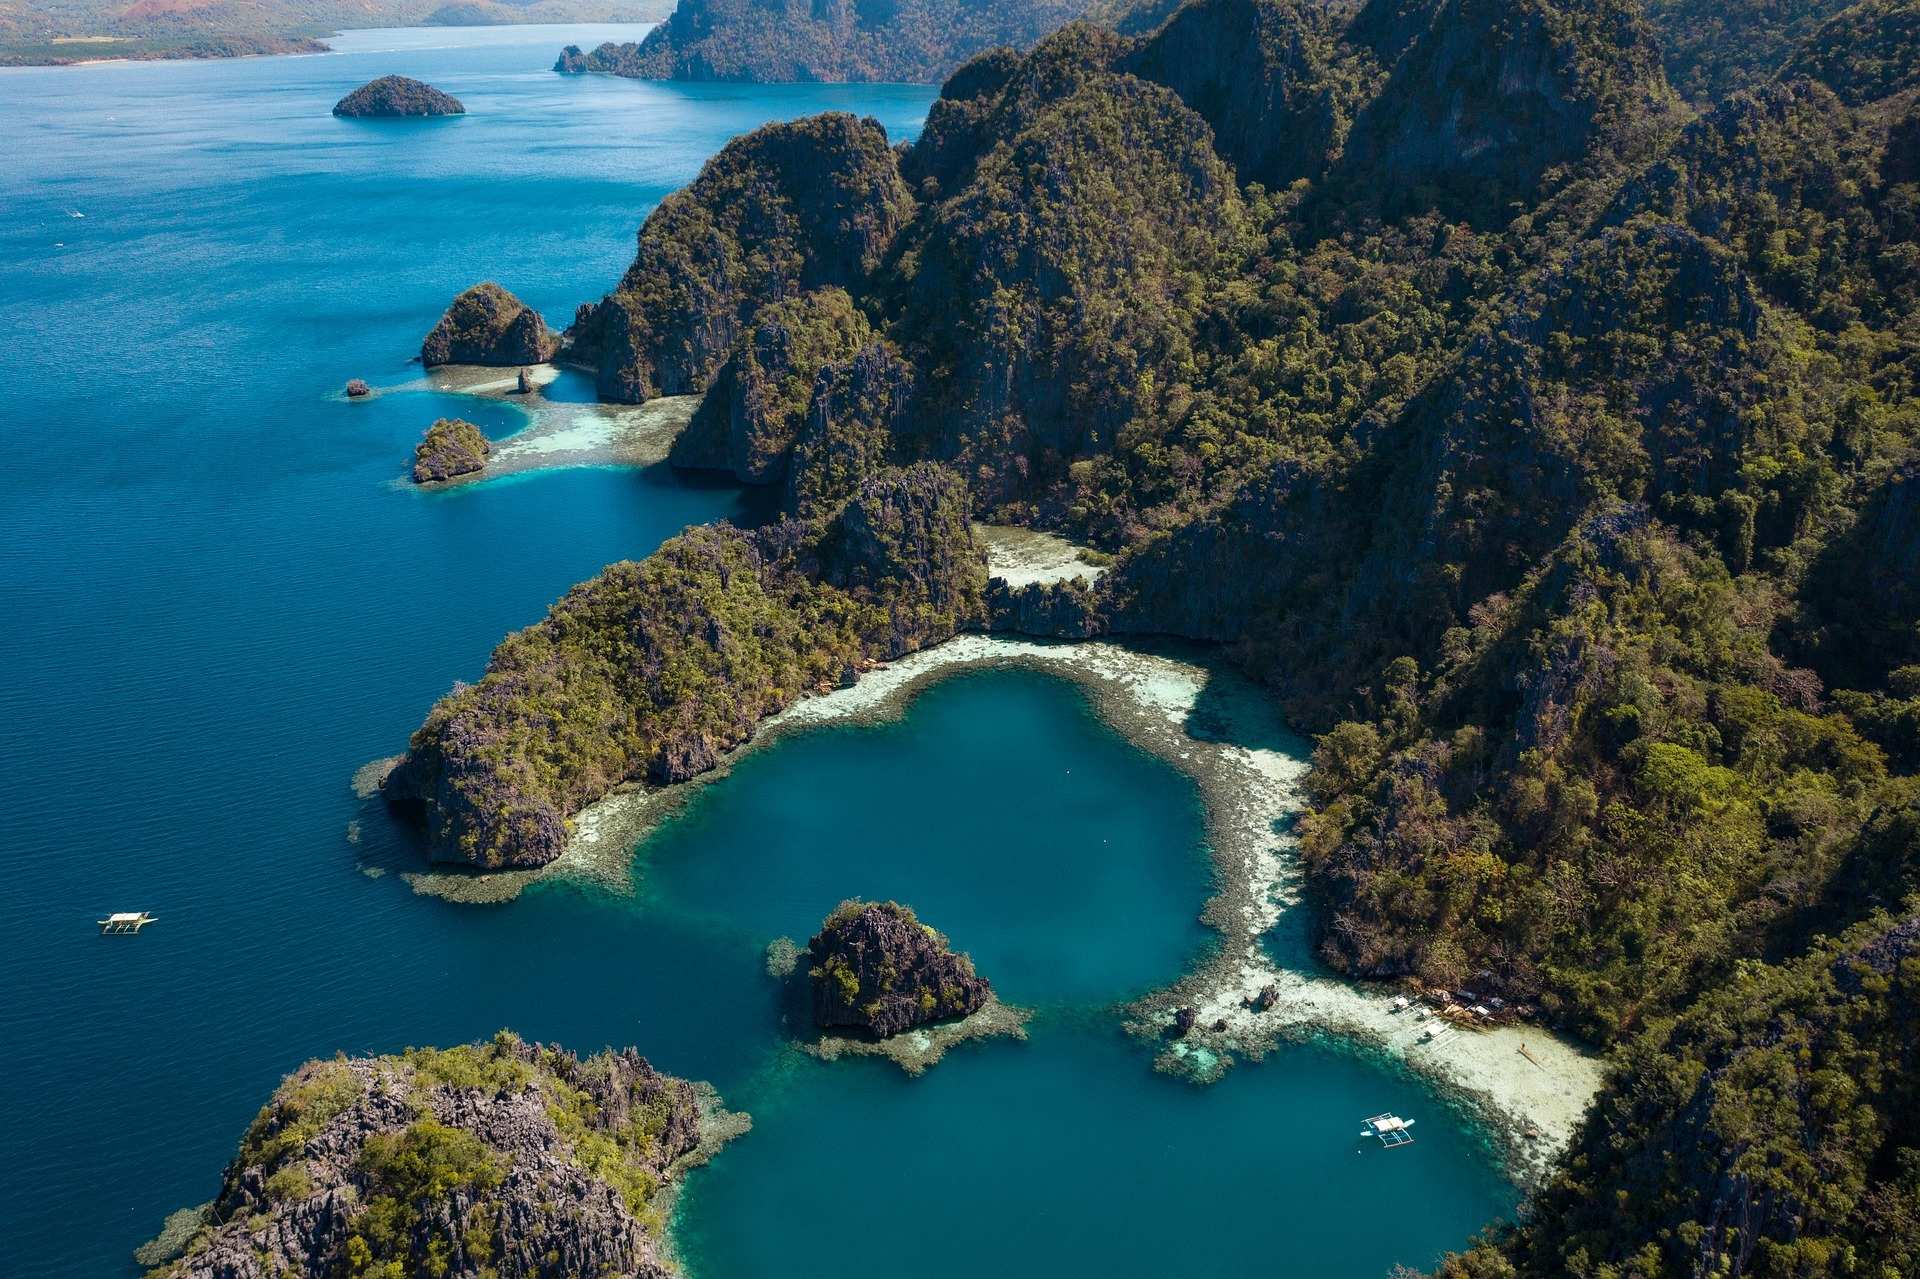 Philippinische Inseln (Foto: pixabay)